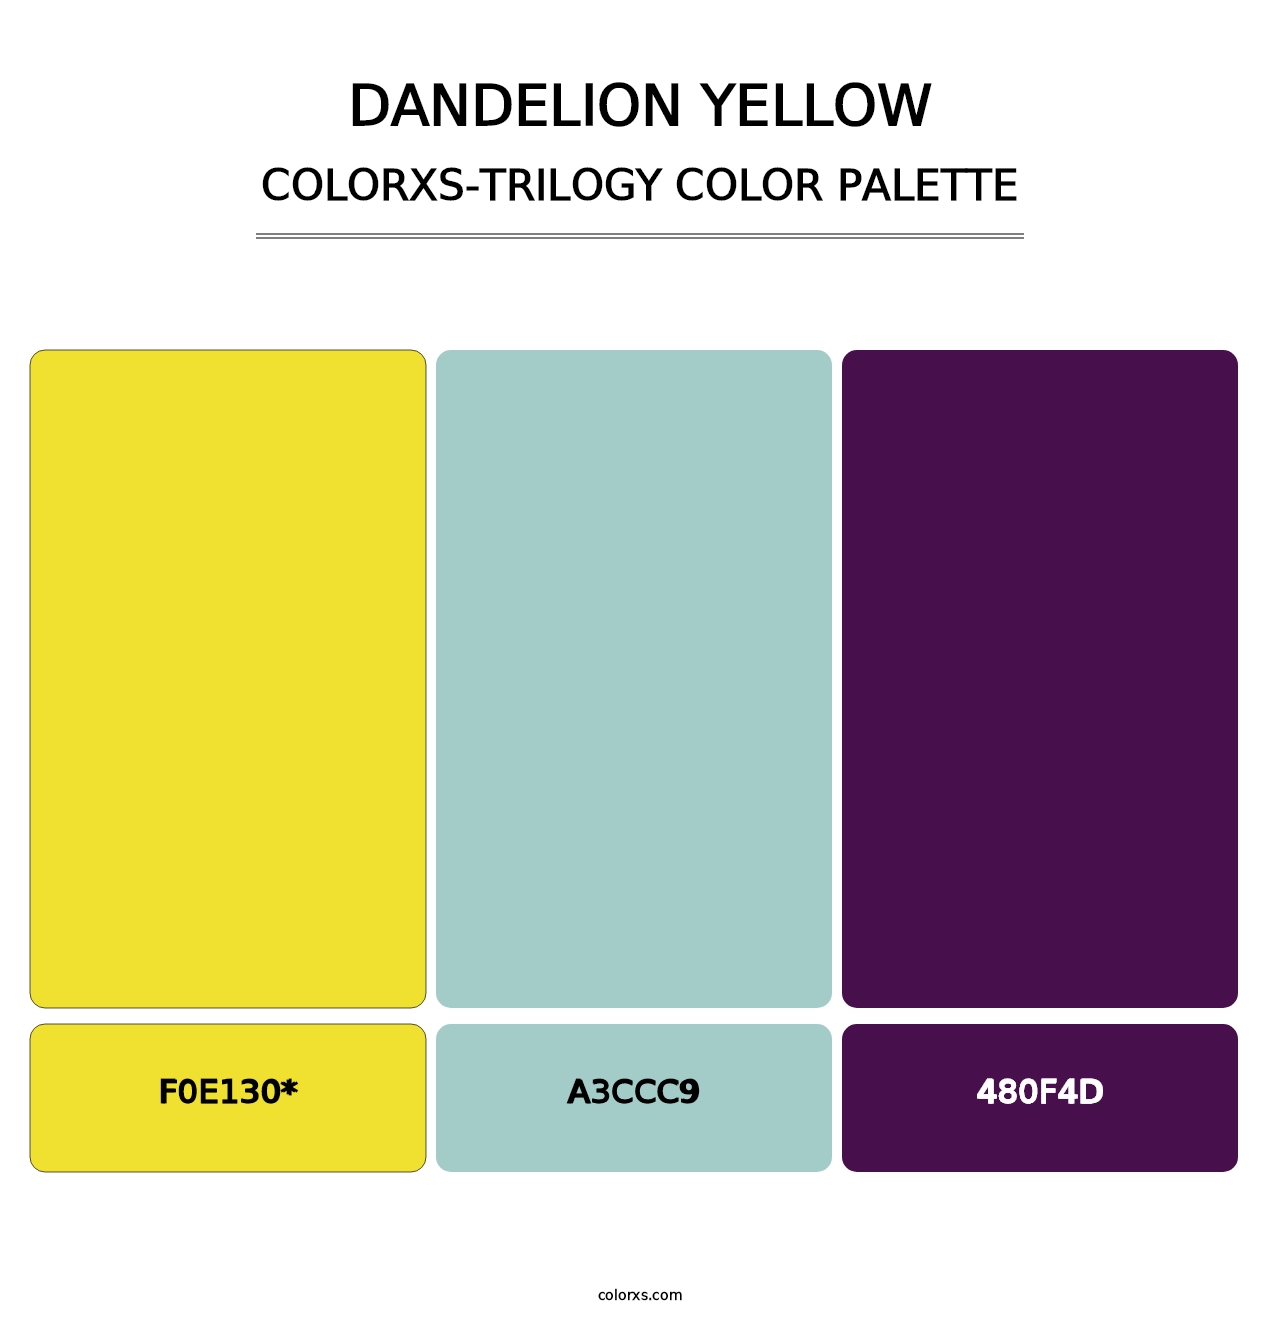 Dandelion Yellow - Colorxs Trilogy Palette